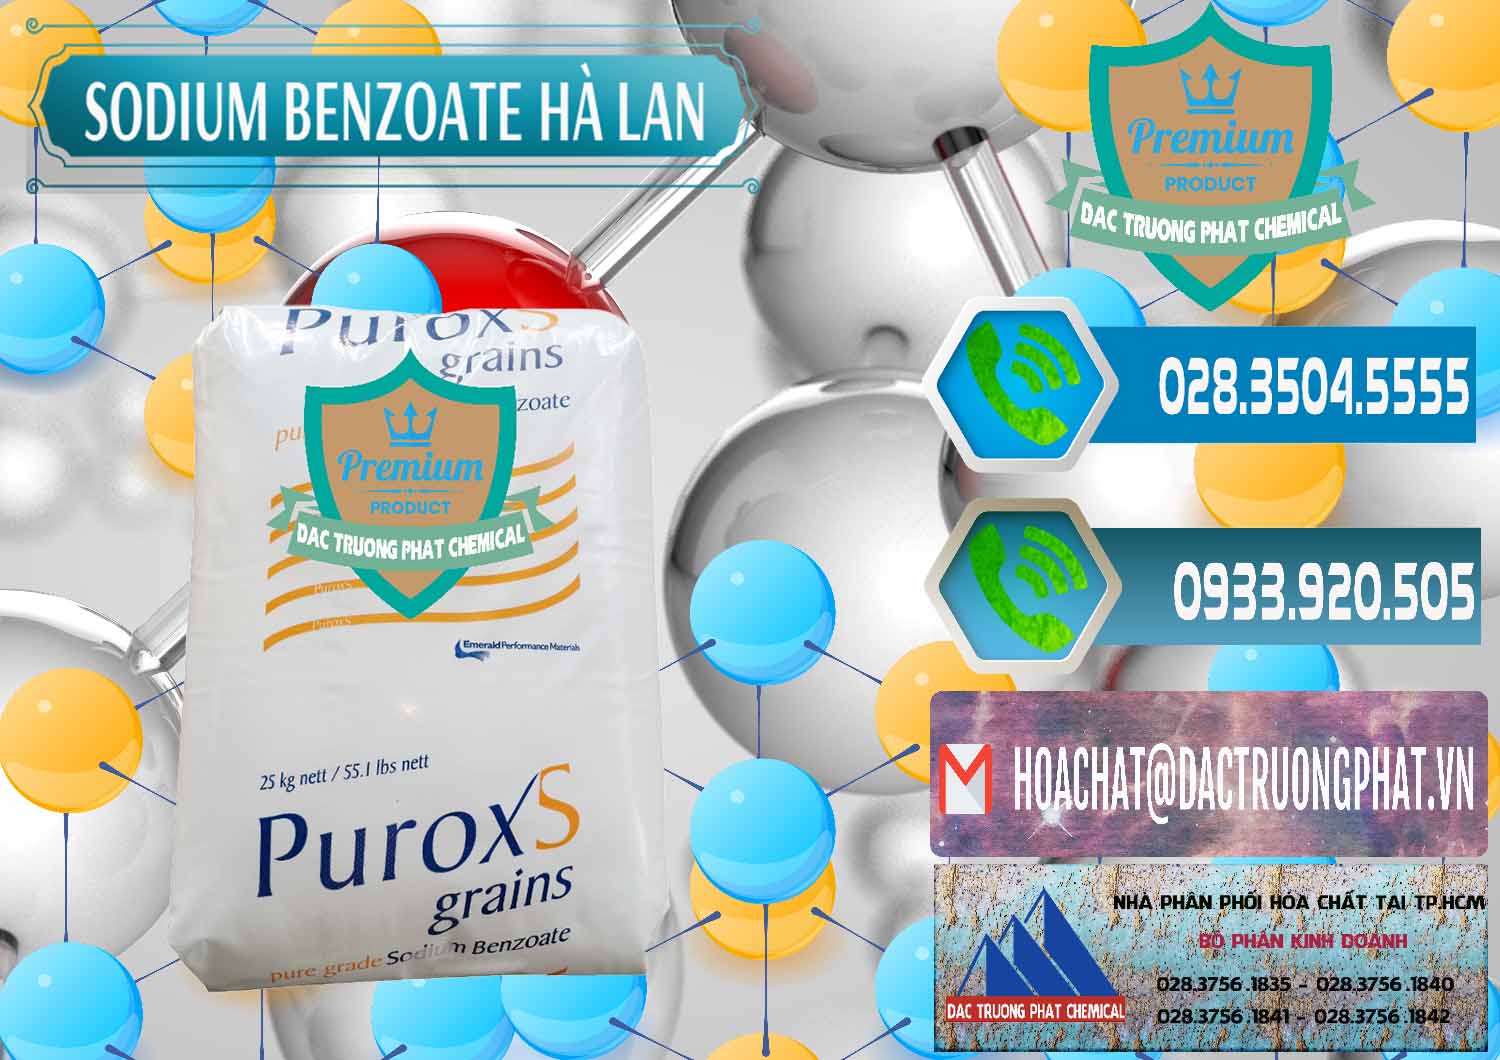 Cty cung cấp và bán Sodium Benzoate - Mốc Bột Puroxs Hà Lan Netherlands - 0467 - Cty chuyên cung cấp và kinh doanh hóa chất tại TP.HCM - congtyhoachat.net